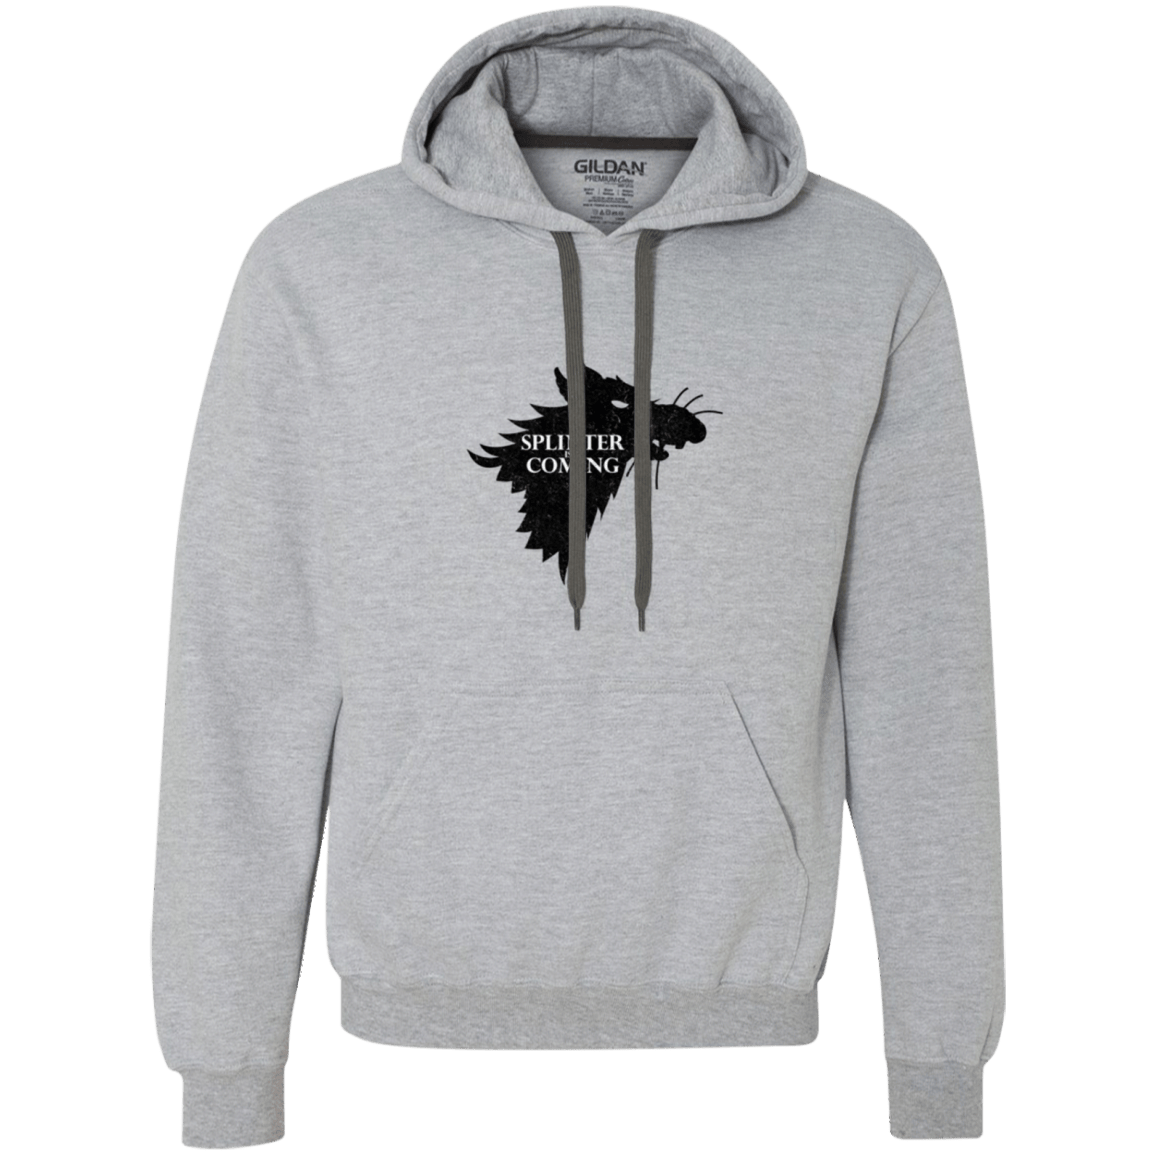 Sweatshirts Sport Grey / Small Splinter is Coming Premium Fleece Hoodie